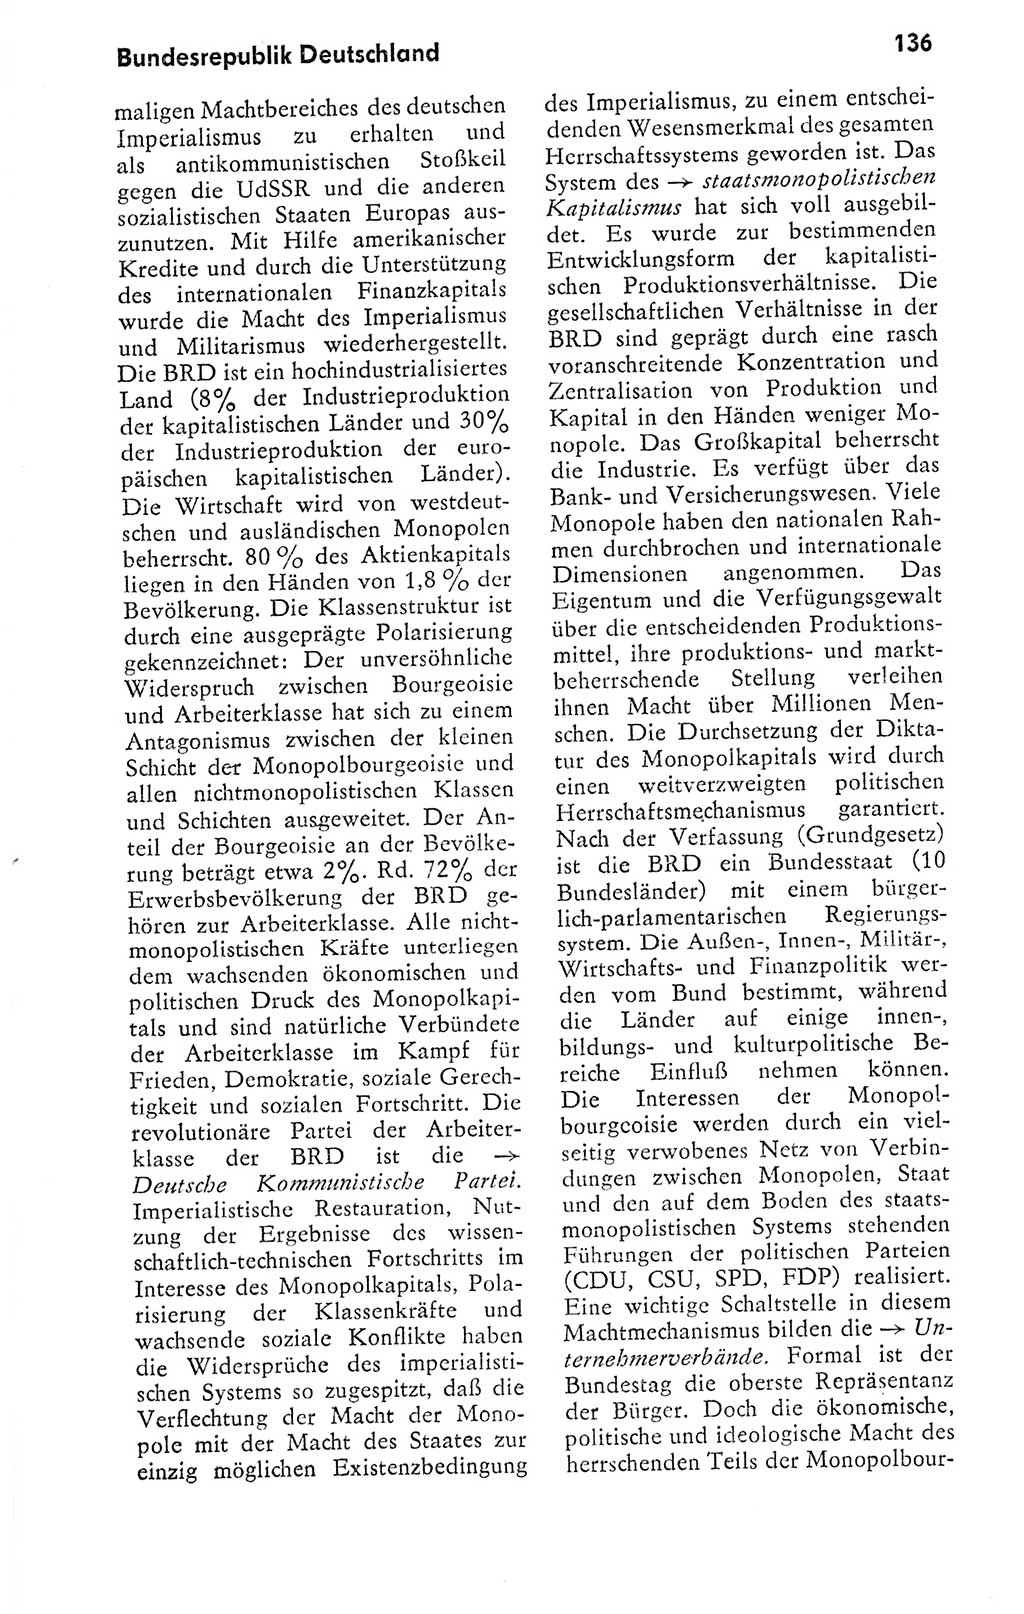 Kleines politisches Wörterbuch [Deutsche Demokratische Republik (DDR)] 1978, Seite 136 (Kl. pol. Wb. DDR 1978, S. 136)